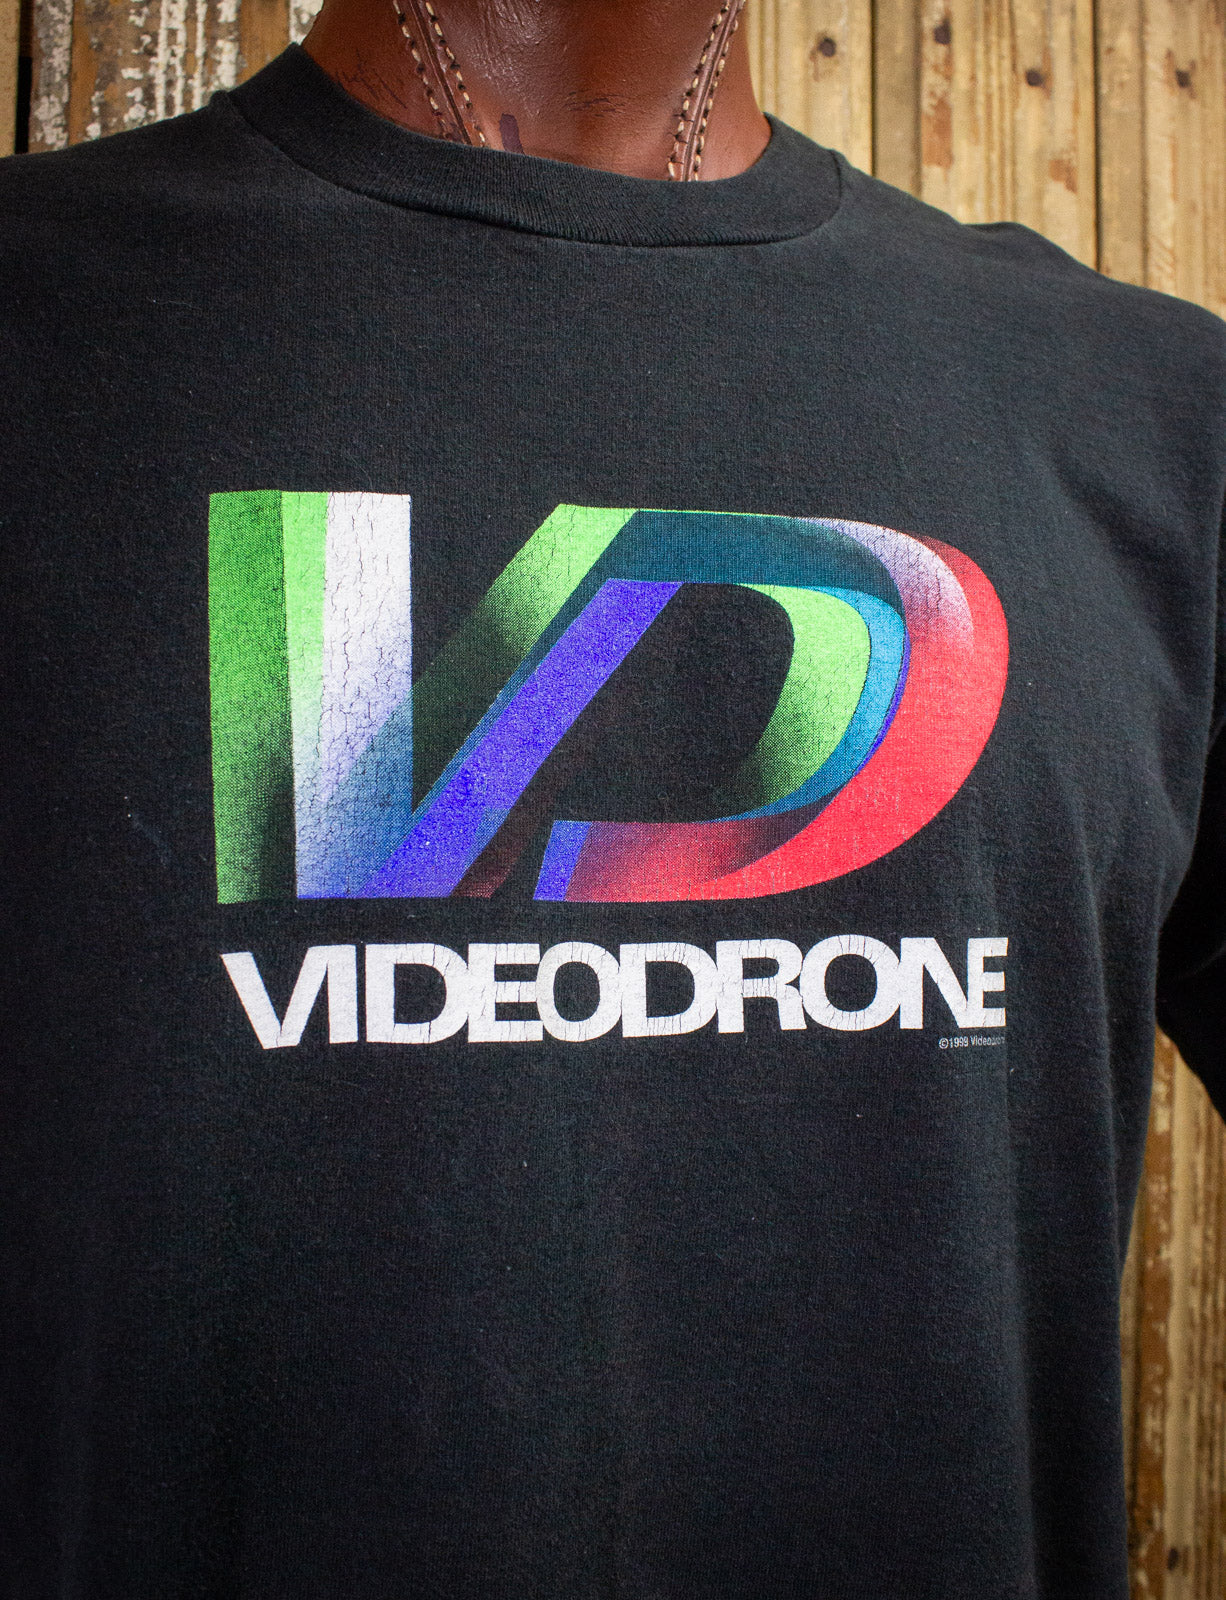 Vintage Videodrone Concert T Shirt 1999 Black XL